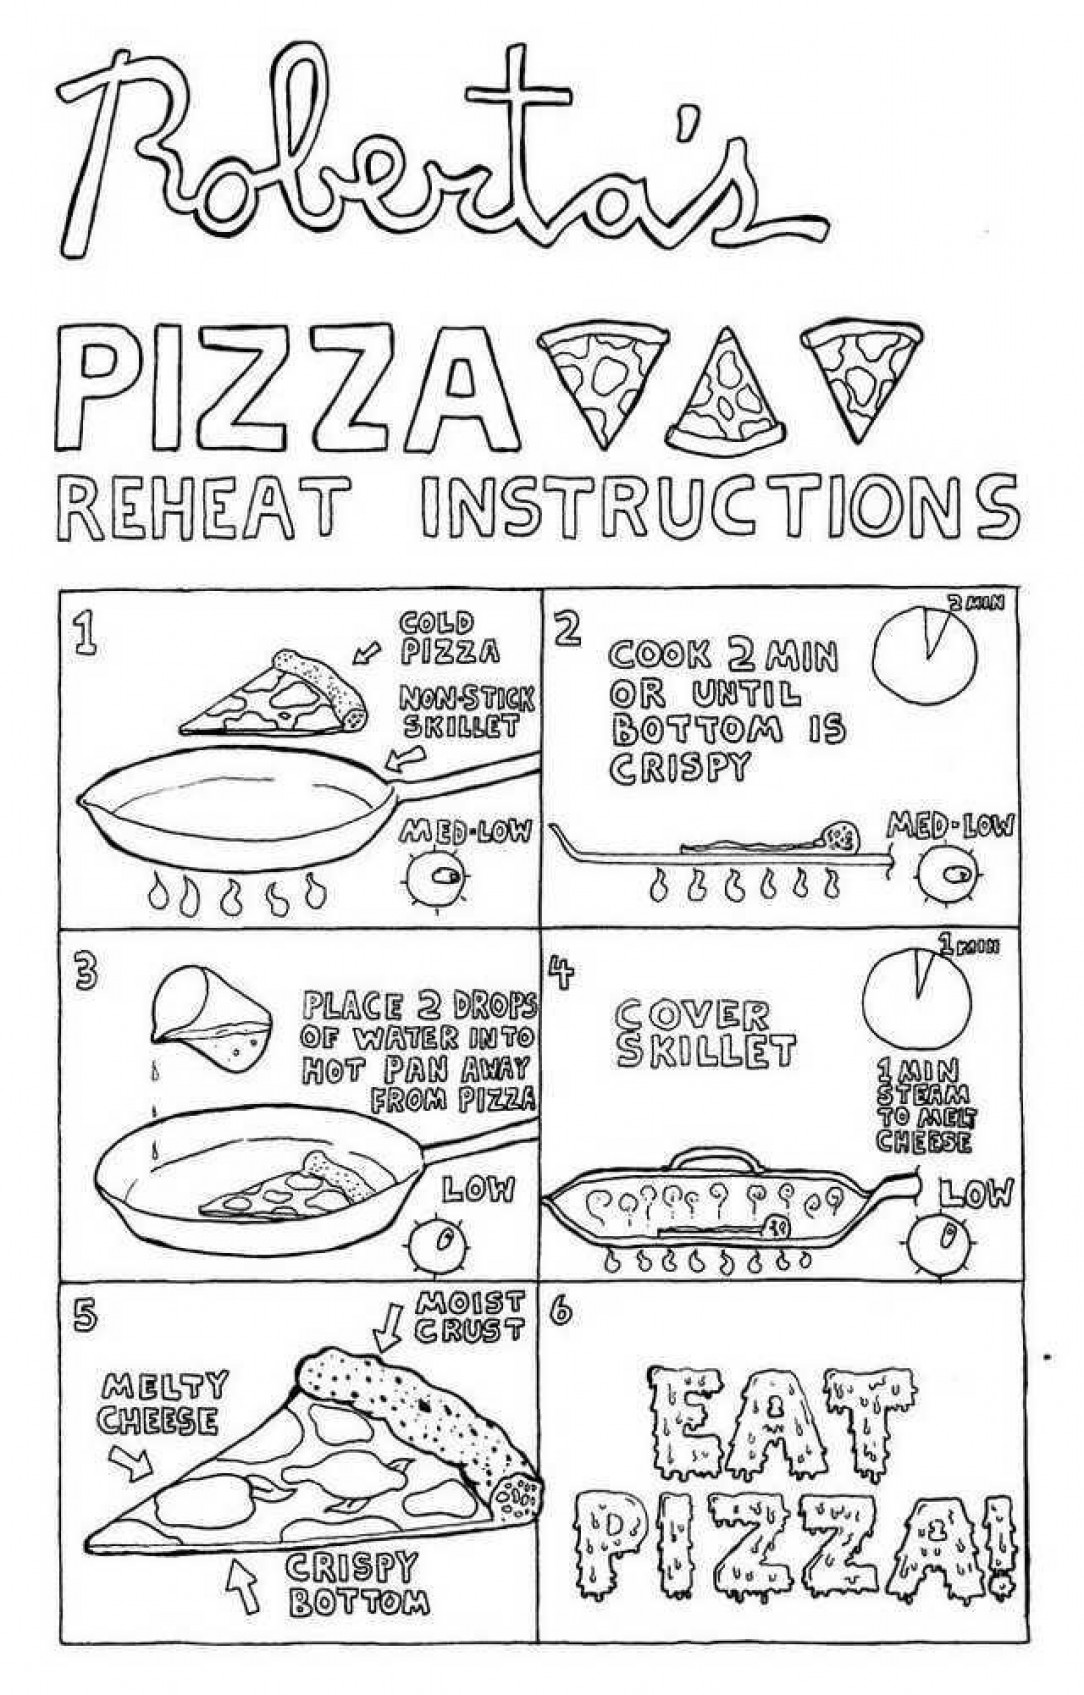 The correct way to reheat pizza